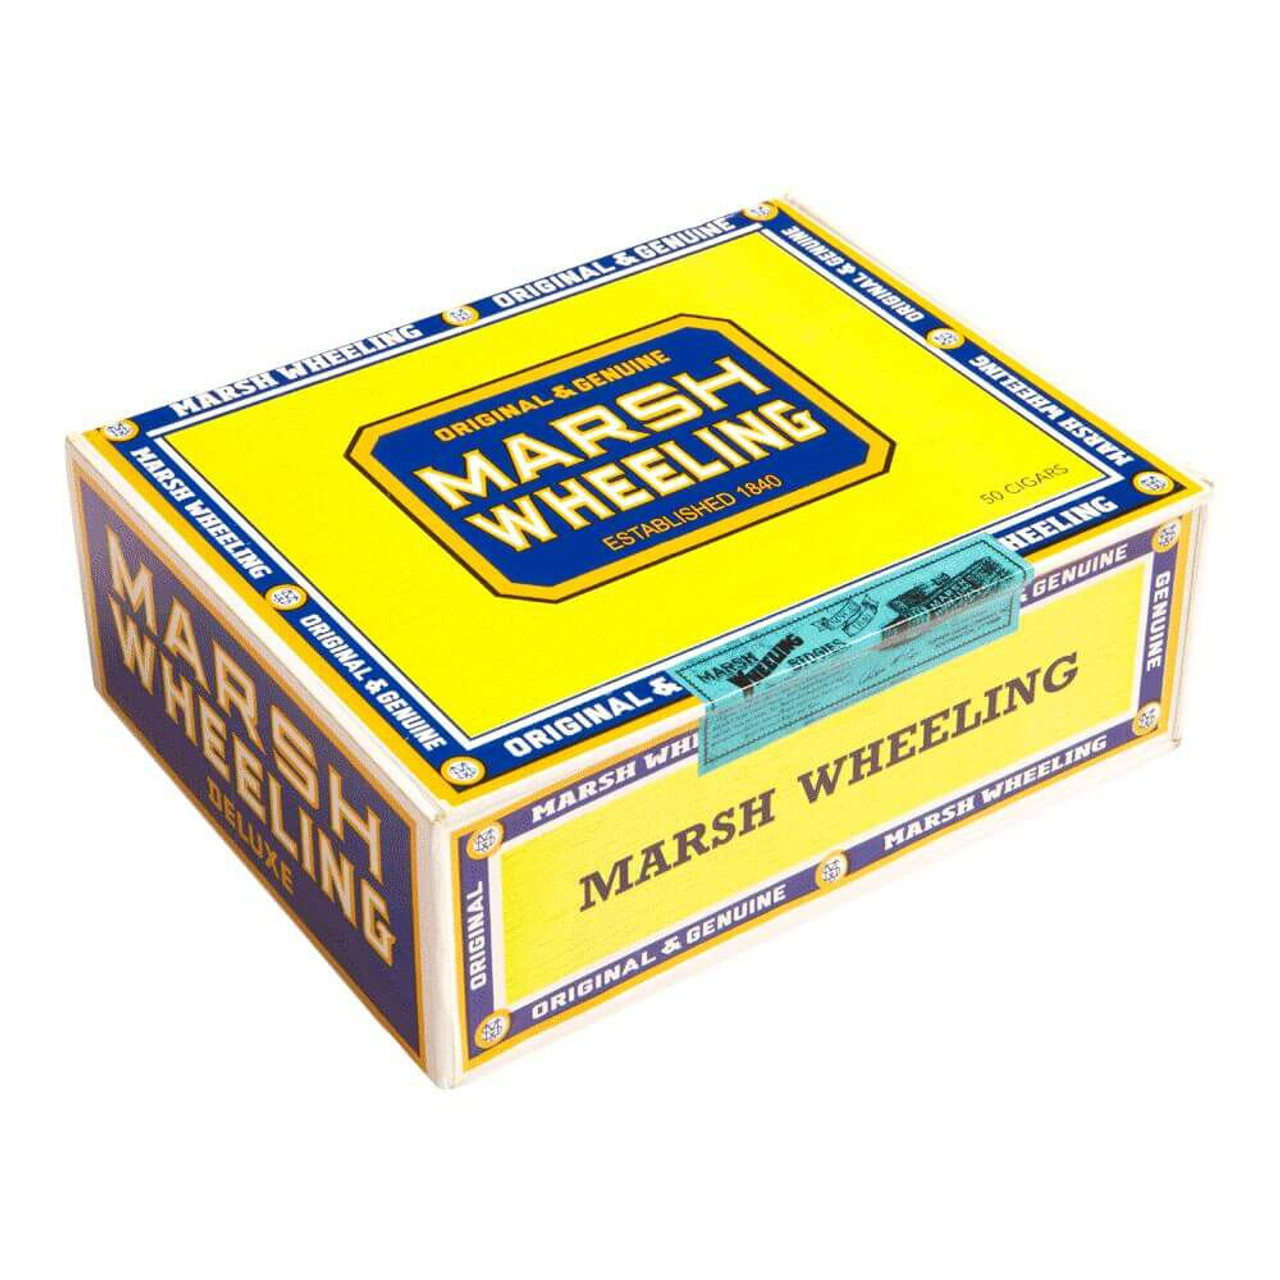 Marsh Wheeling Deluxe II Cigars - 7 x 34 (Box of 50)